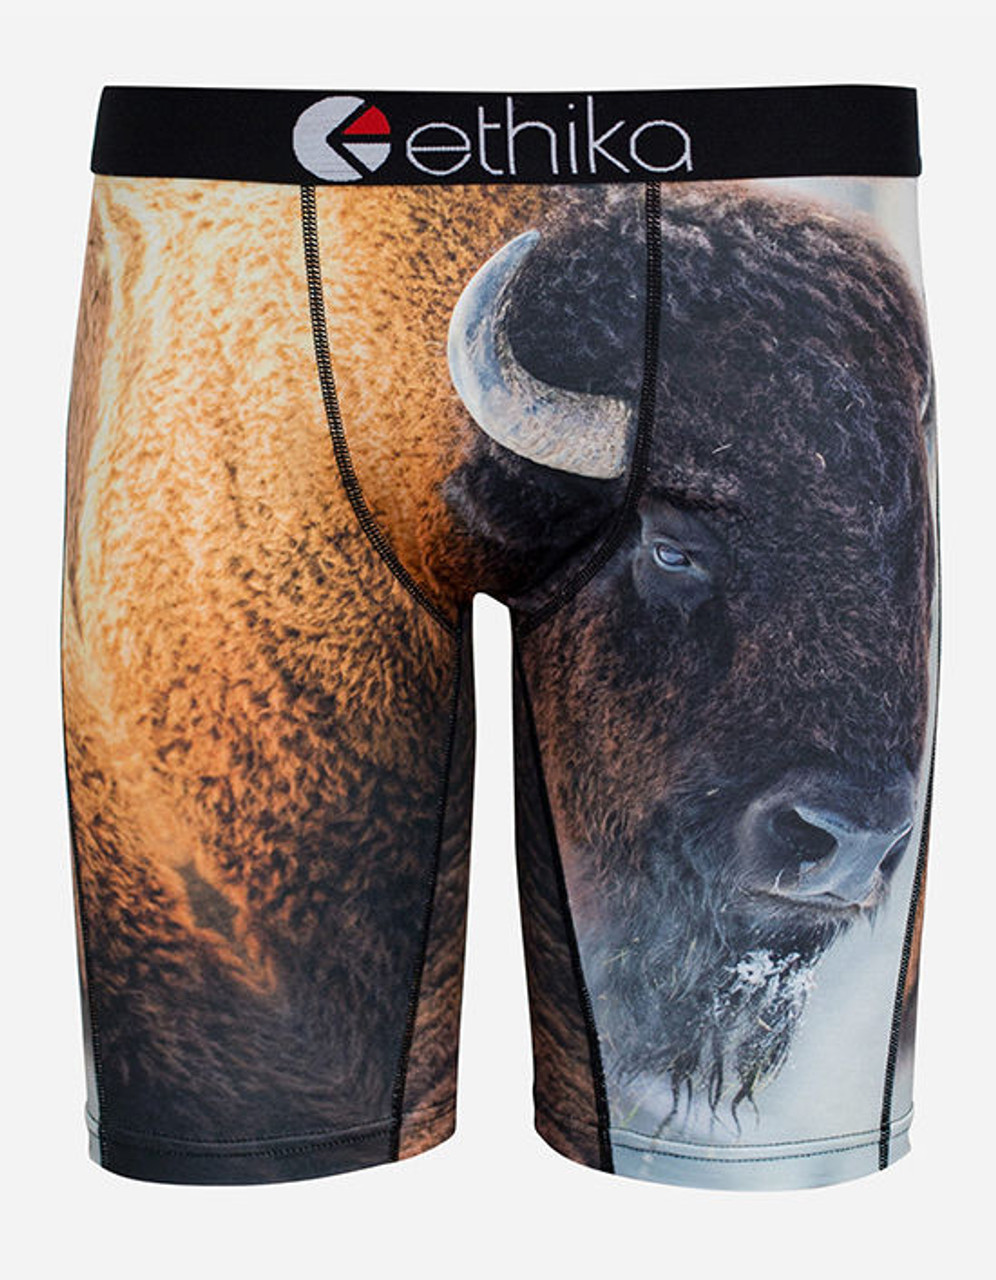 Ethika Myke Bison Tyson Animal Zoo Wild Mens Underwear Boxer Briefs UMS714  - Fearless Apparel